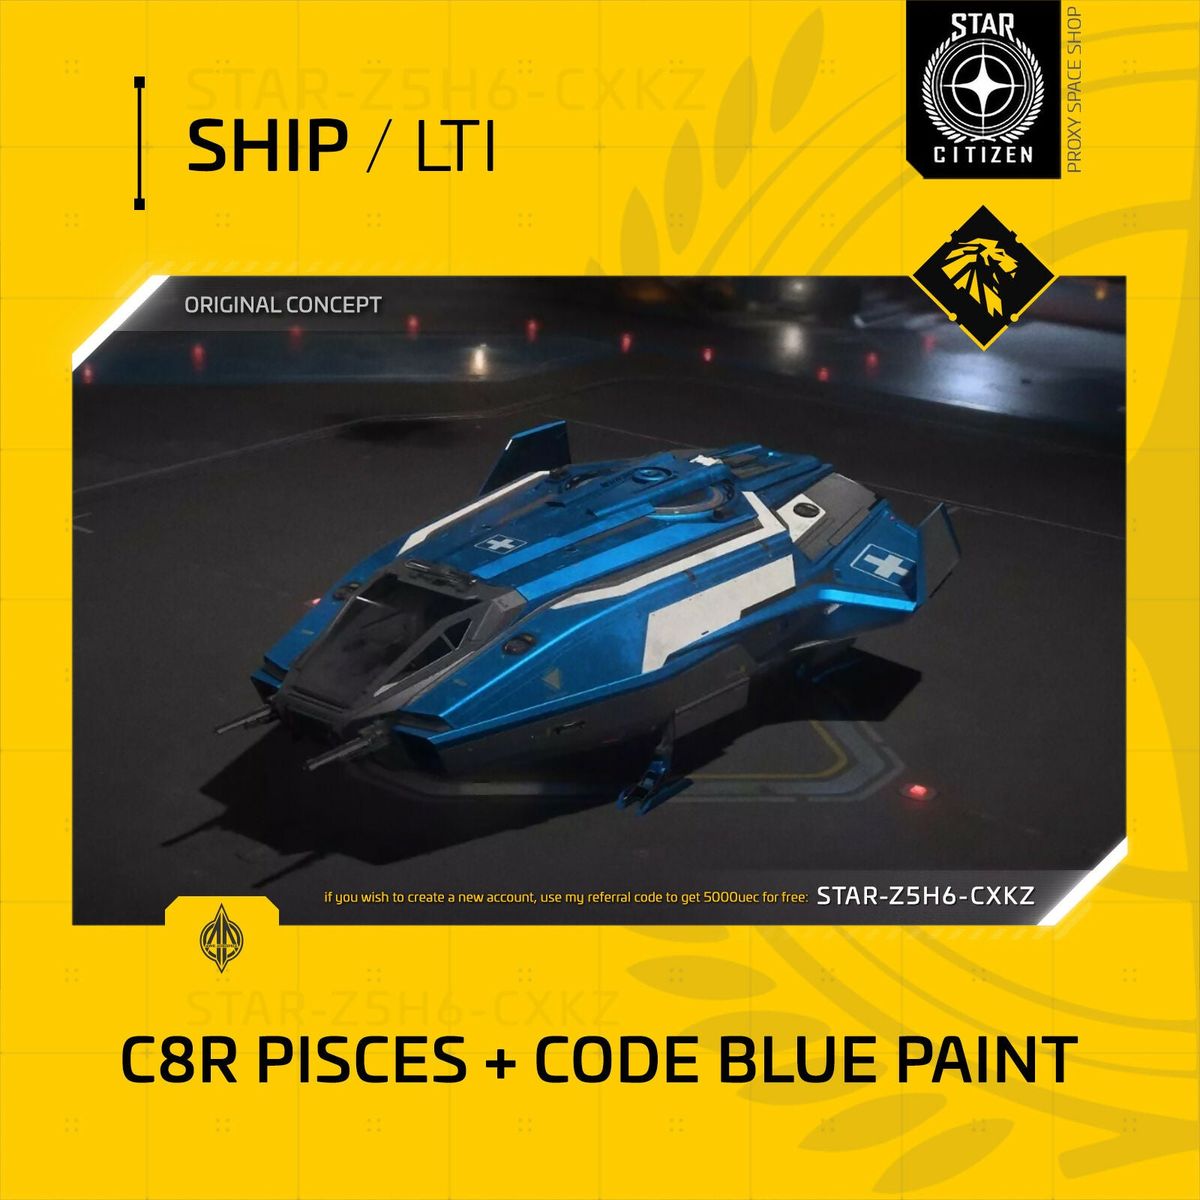 Anvil C8R Pisces Plus Code Blue Paint - Lti - Original Concept OC